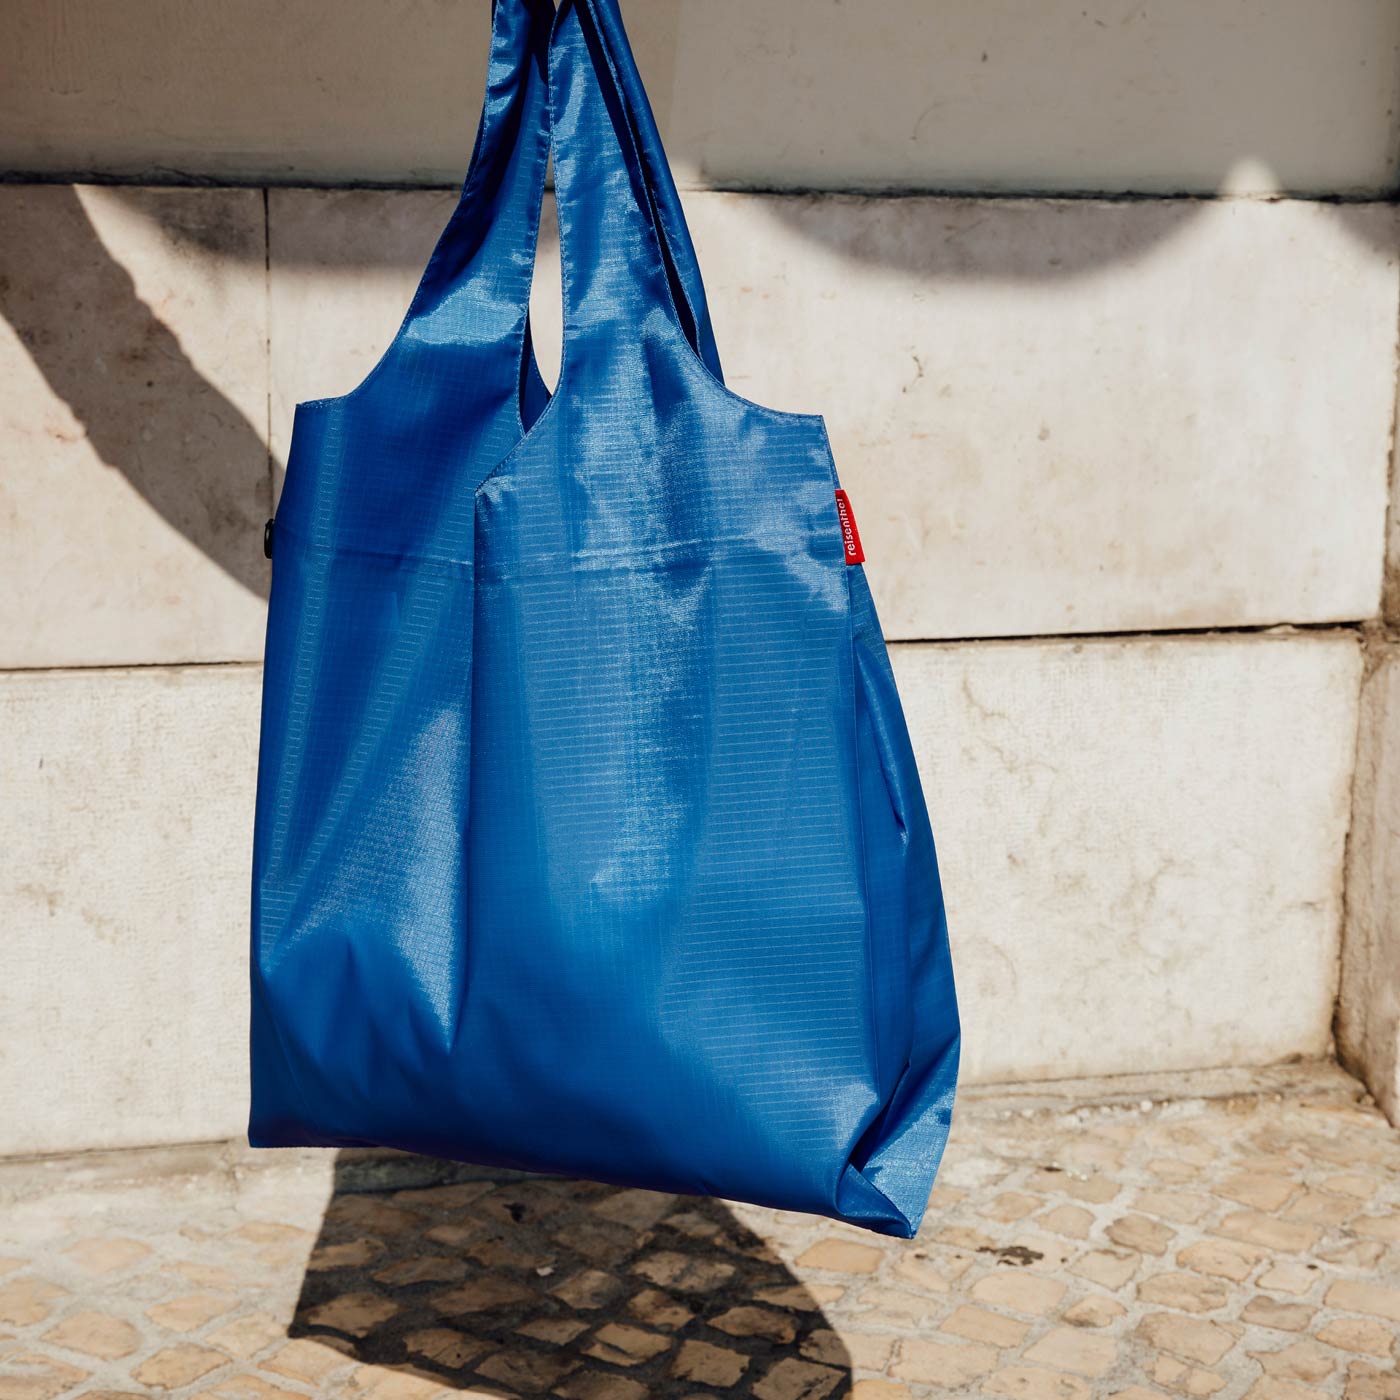 [Reisenthel] Mini Maxi Shopper L - Reusable Washable Foldable Shopping Tote Bag